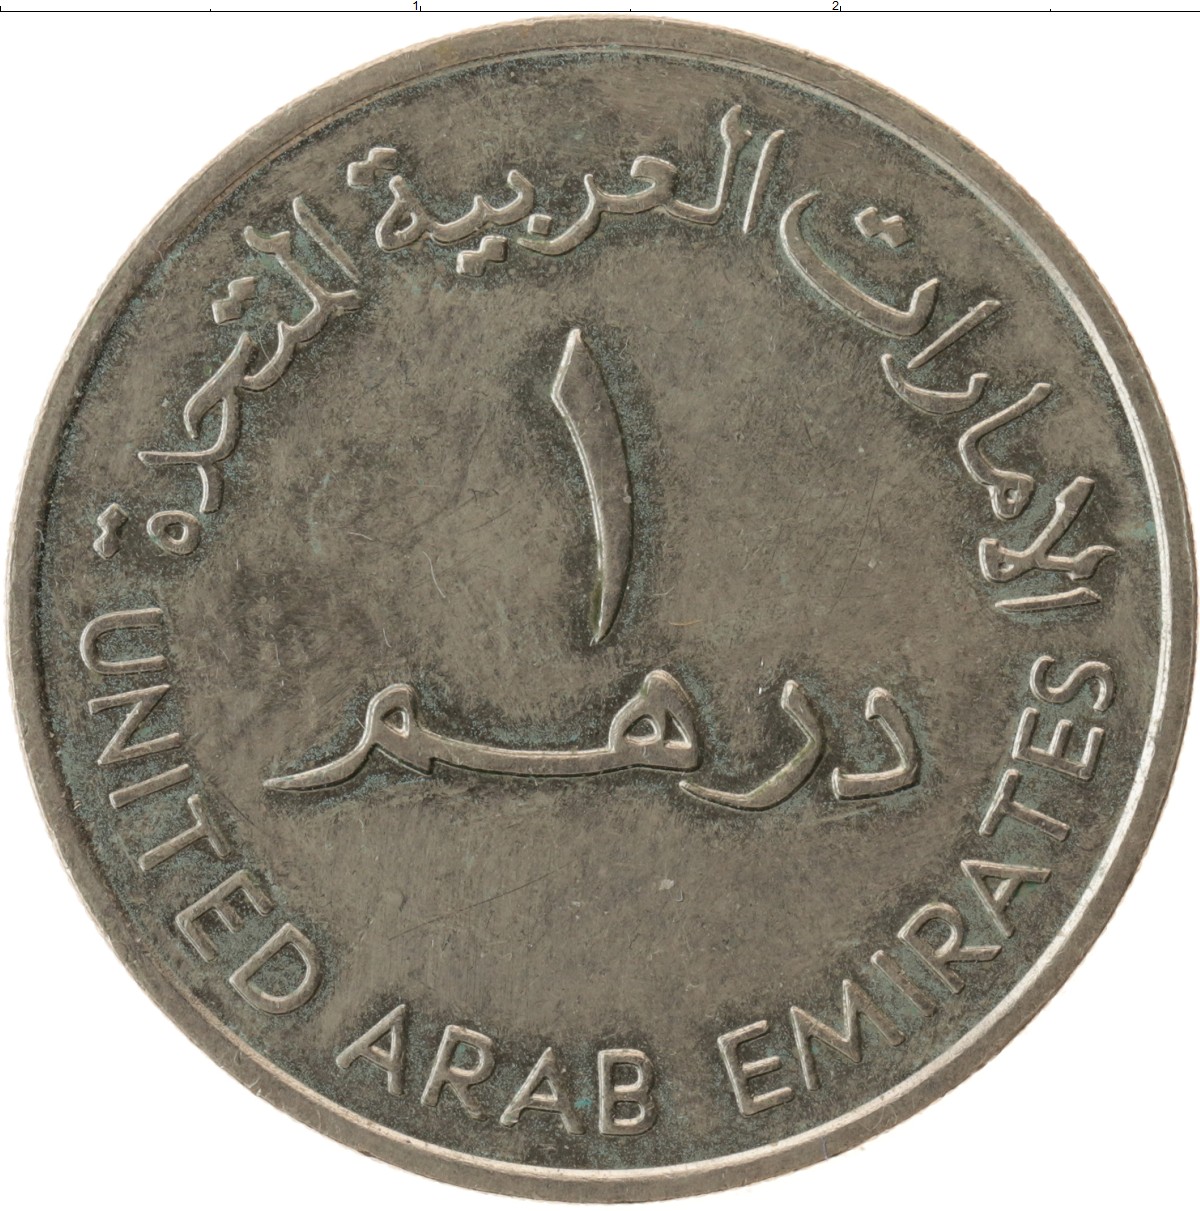 220 дирхам. Арабские монеты. Монеты Эмиратов. Монеты дирхам. Арабская монета 1.